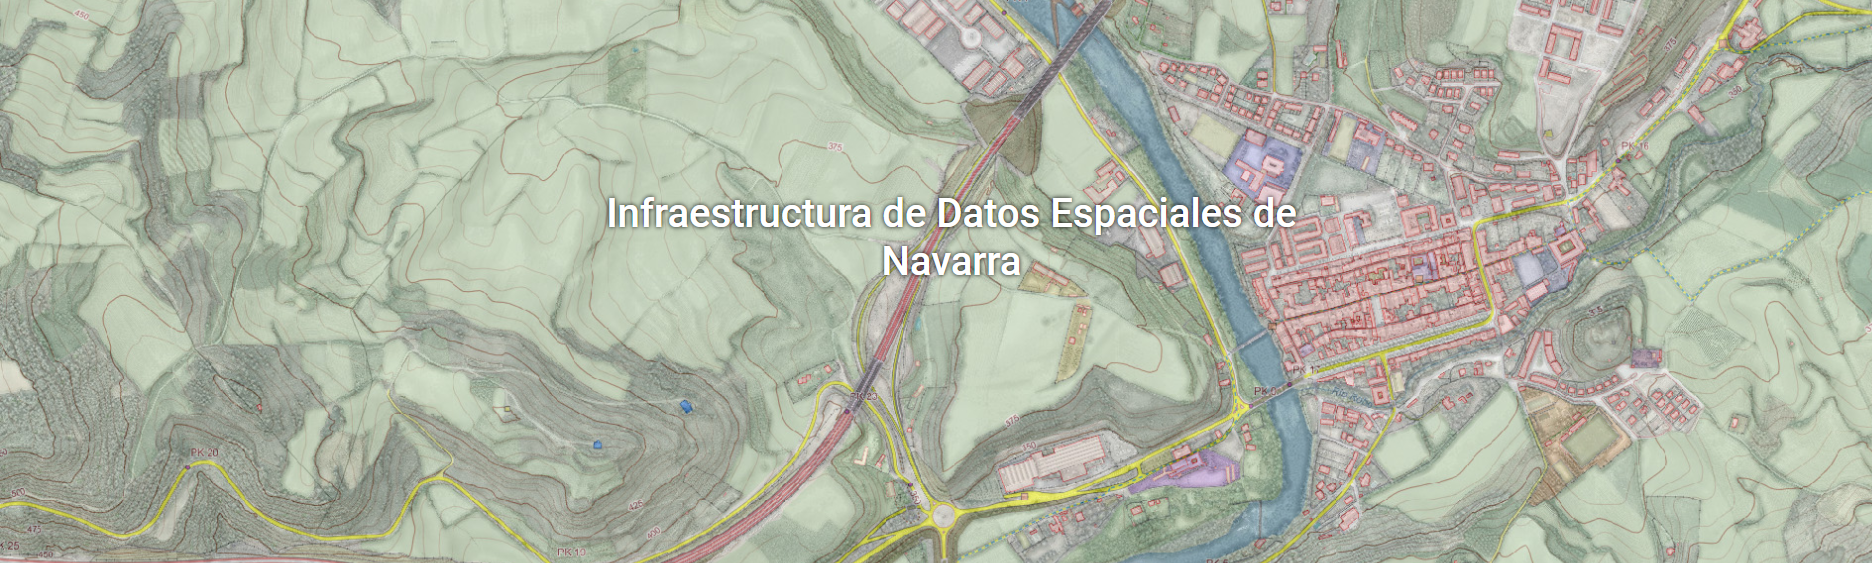 Fotografía del portal de la Infraestructura de Datos Espaciales de Navarra.